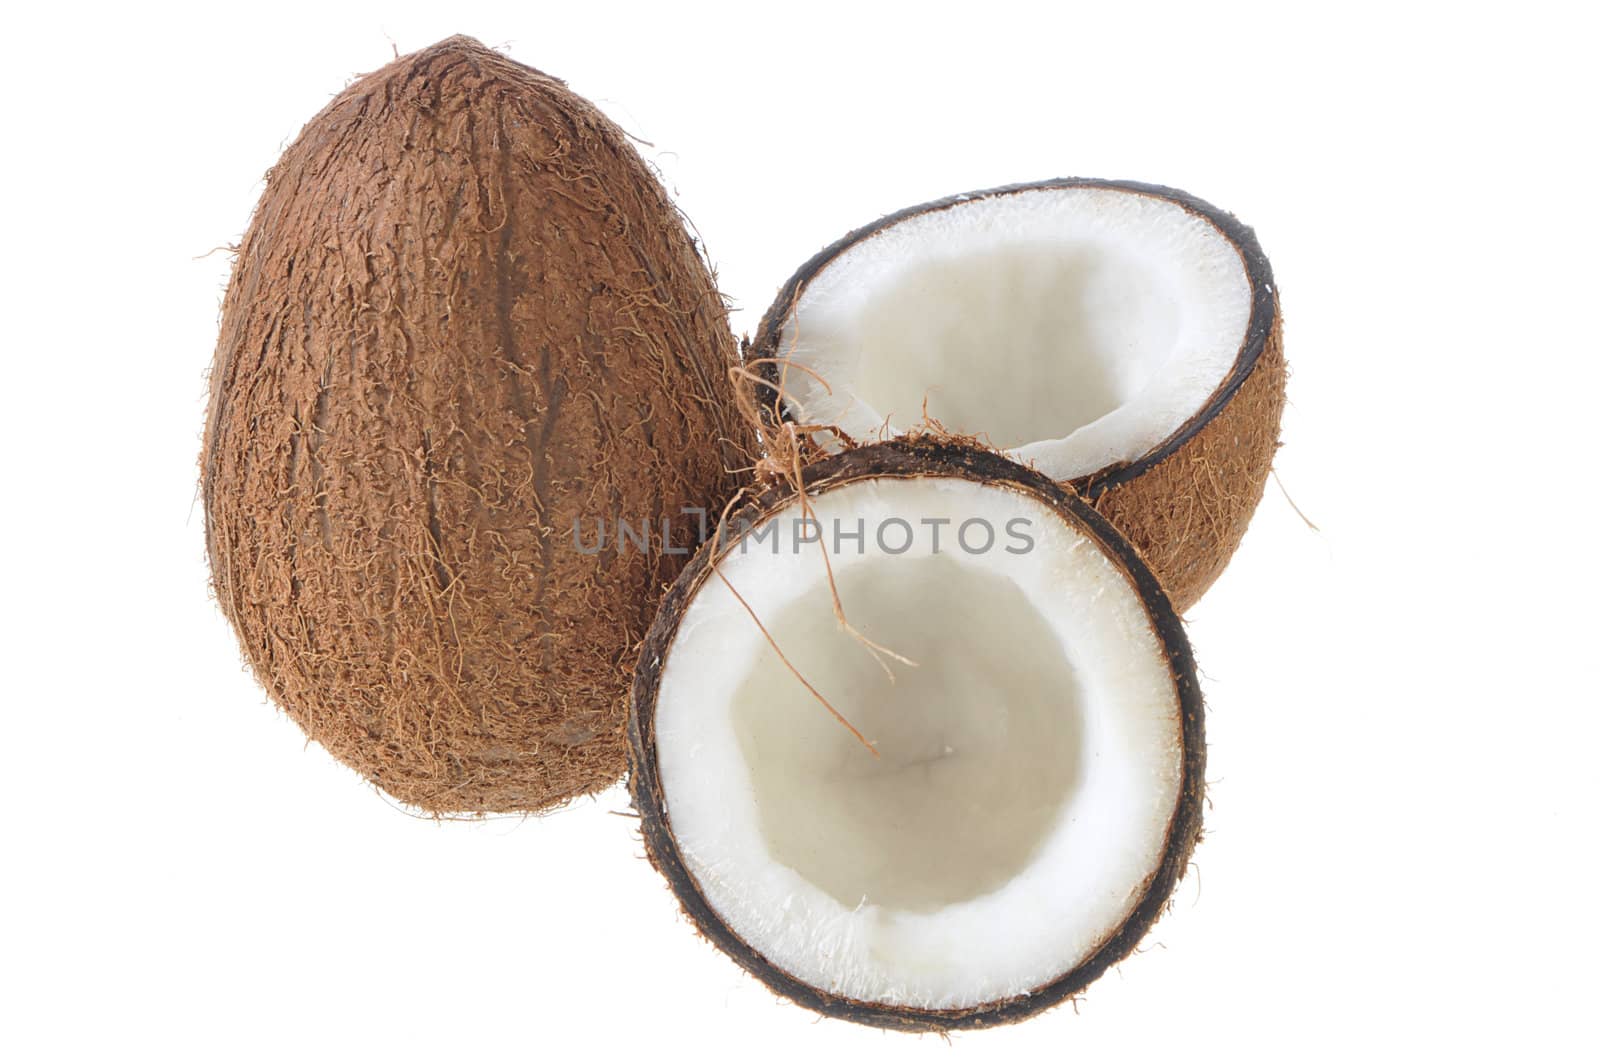 Broken coconut by dyoma